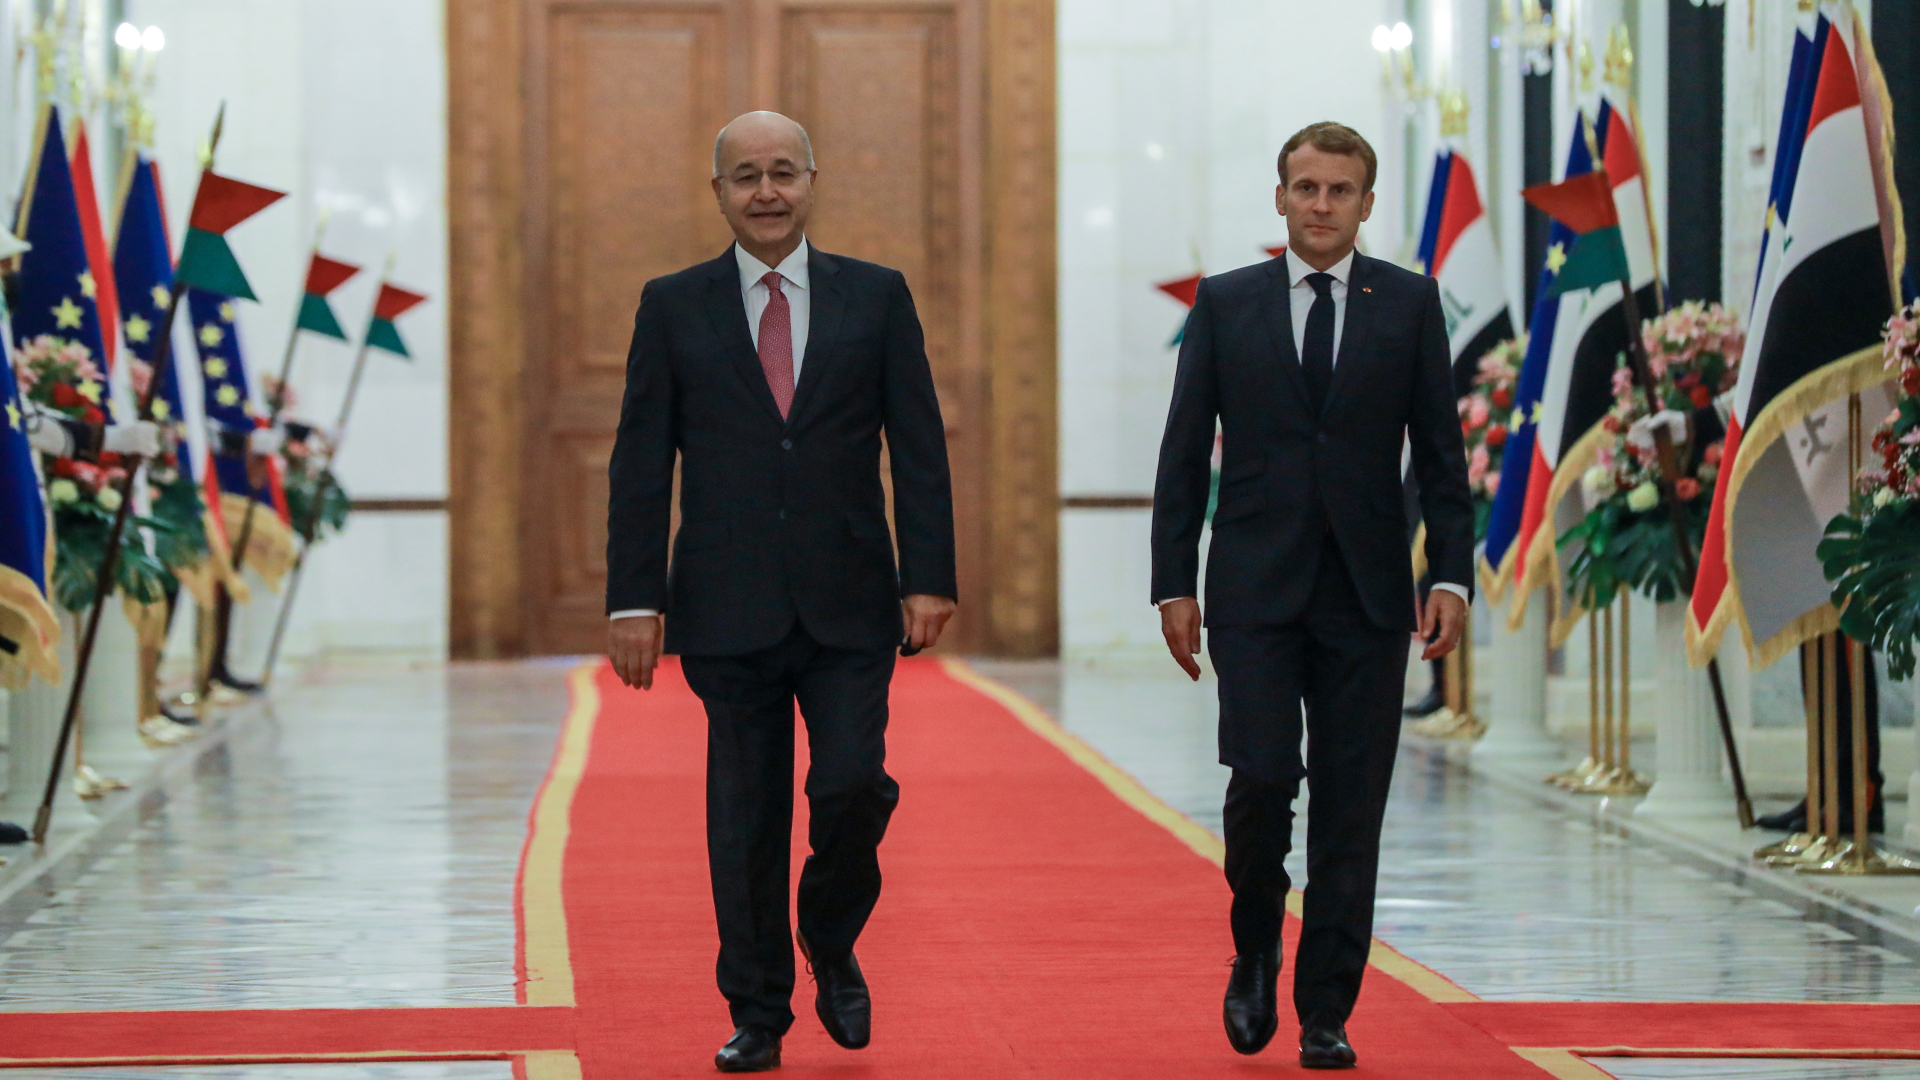 Barham Salih, Präsident vom Irak, und Emmanuel Macron, Präsident von Frankreich, gehen durch den Präsidentenpalast zu einer gemeinsamen Pressekonferenz.  | dpa